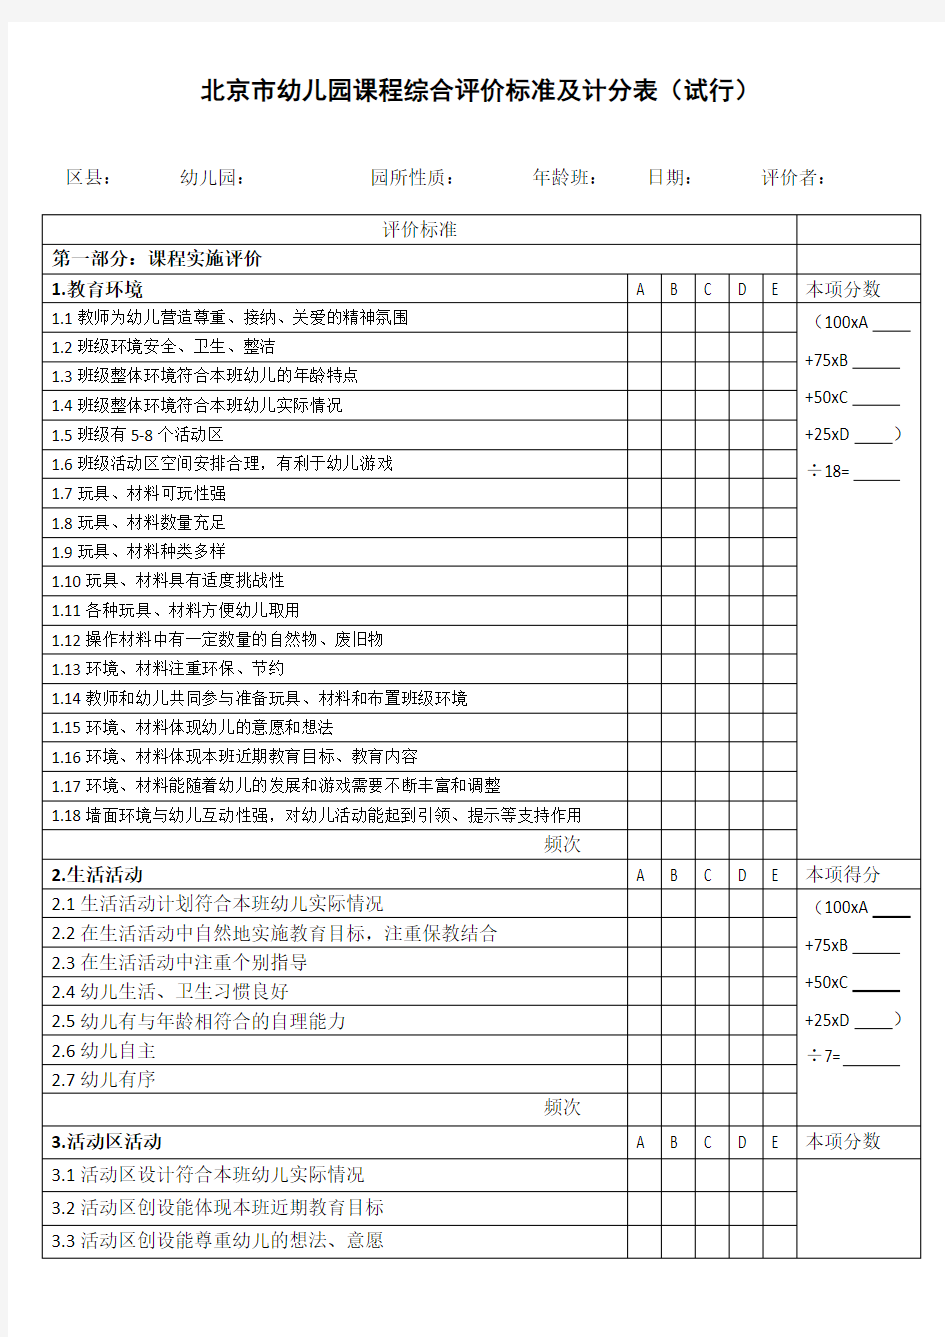 北京市幼儿园课程综合评价标准及积分表(试行)